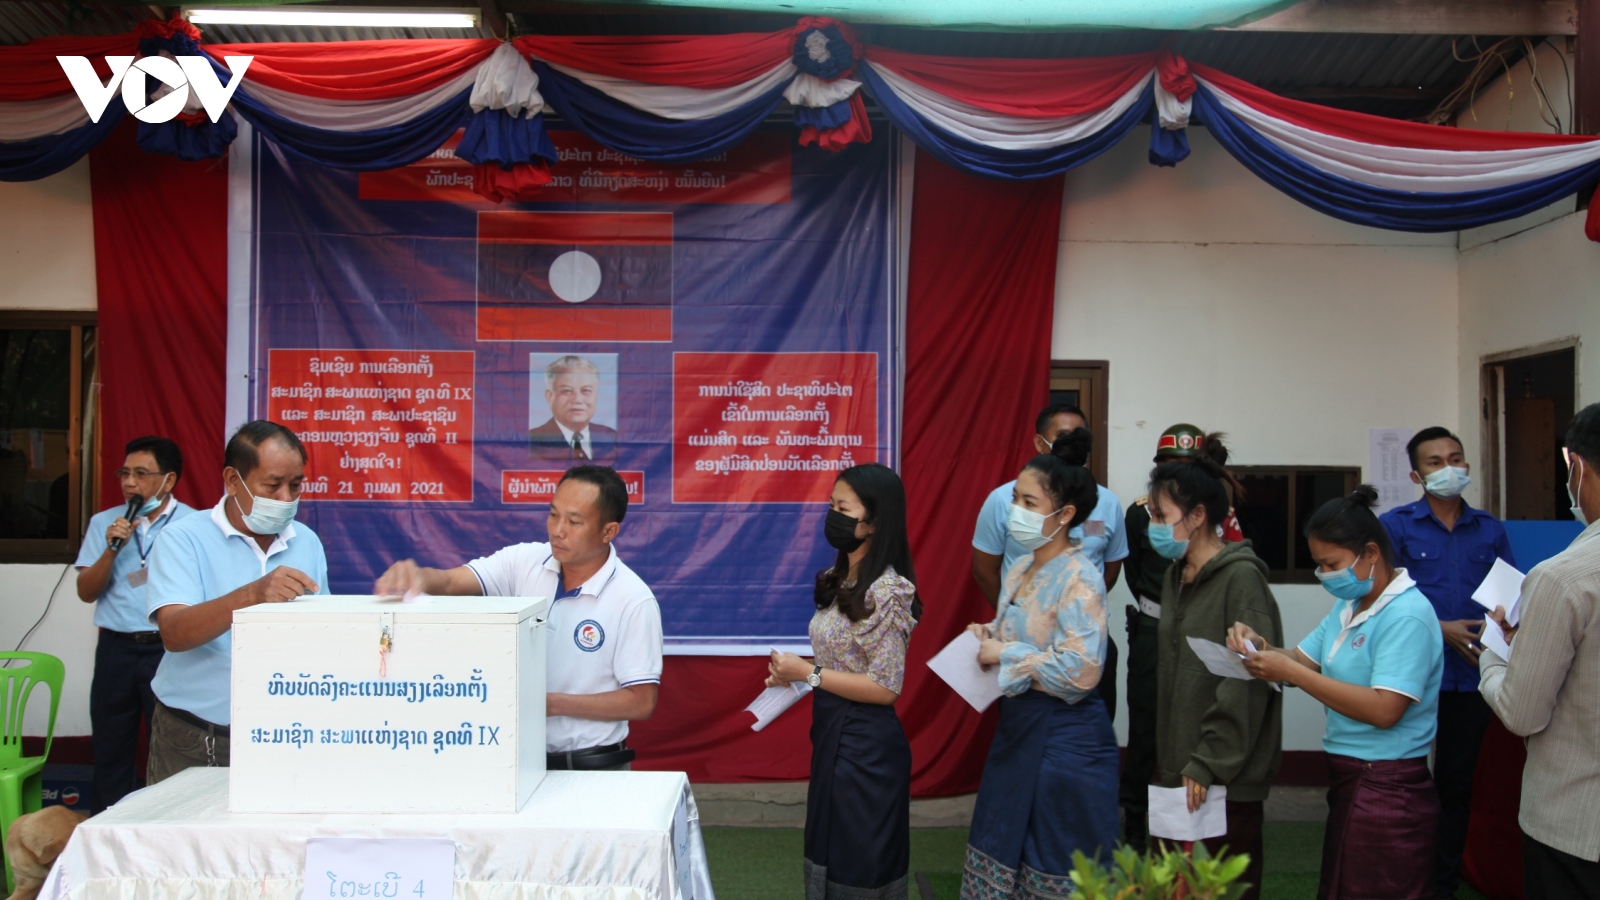 Hơn 4 triệu cử tri Lào đi bầu đại biểu Quốc hội và Hội đồng nhân dân cấp tỉnh, thành phố